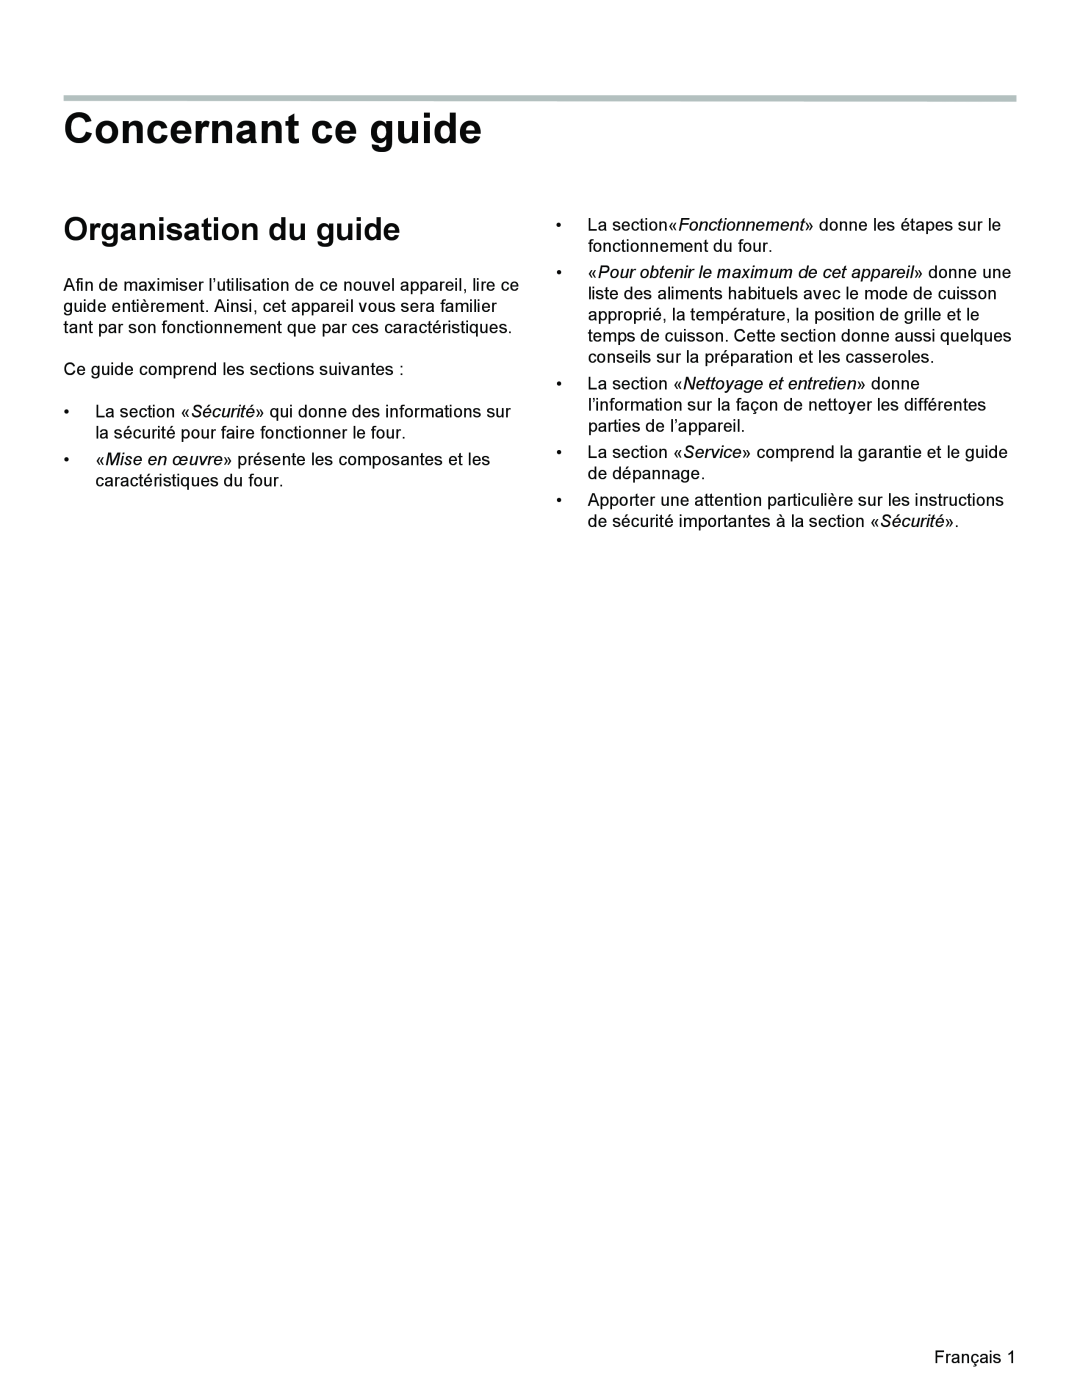 Bosch Appliances HGS3023UC manual Concernant ce guide, Organisation du guide 